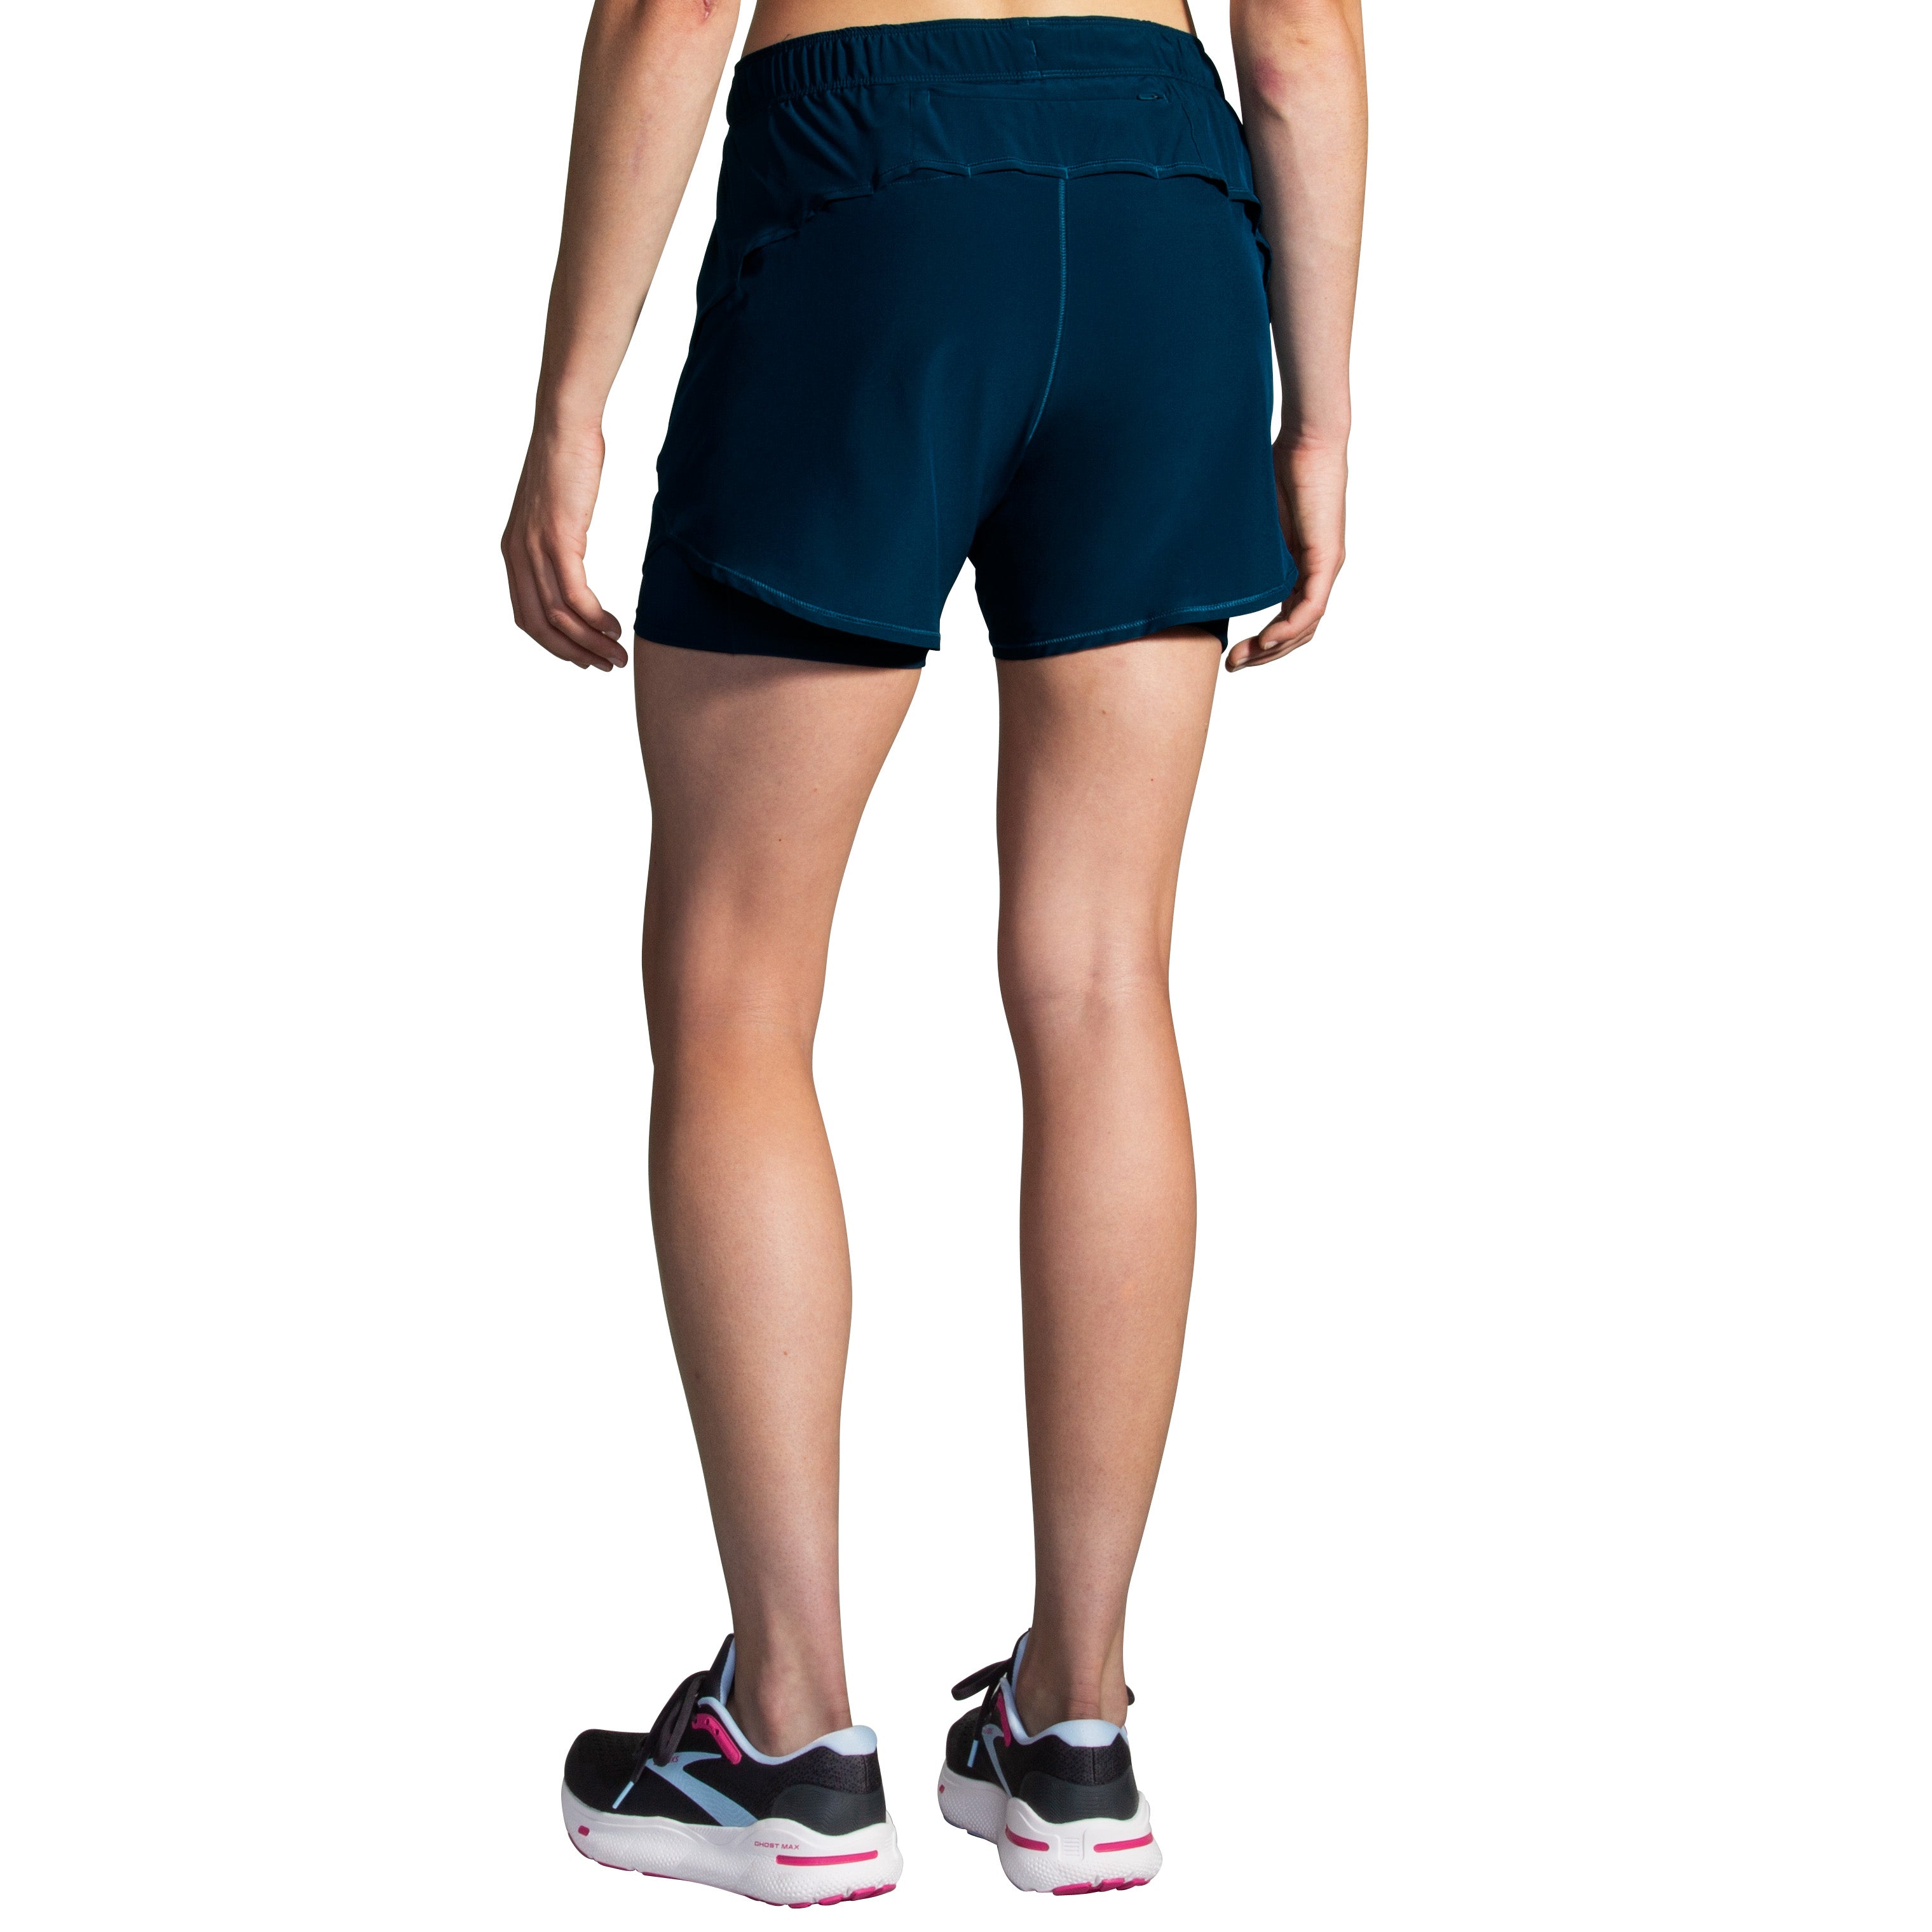 Chaser 5" 2-in-1 Short Women's running bottoms